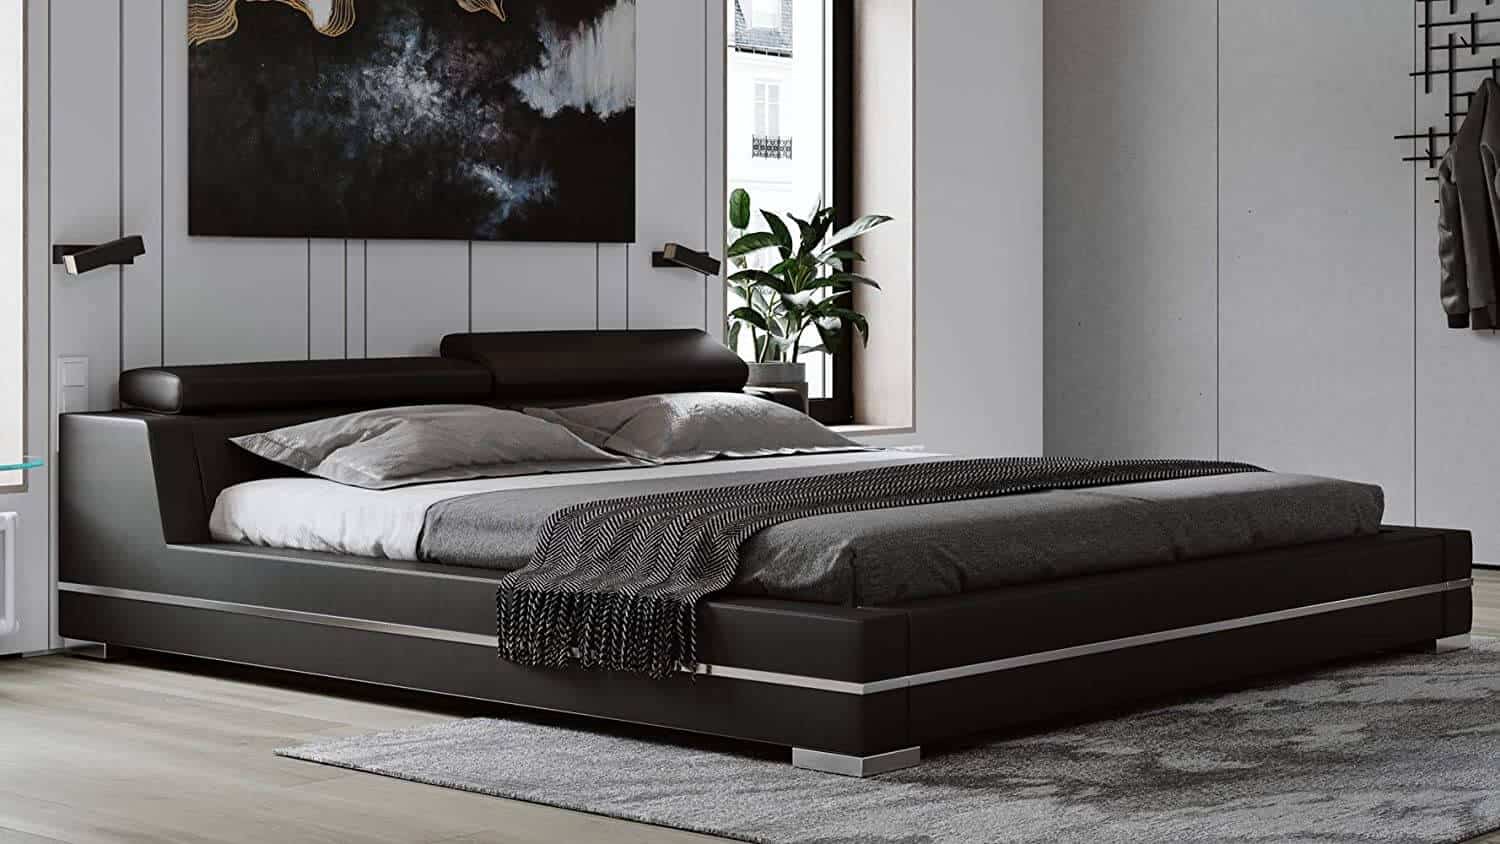 giá giường gỗ sồi 1m8 